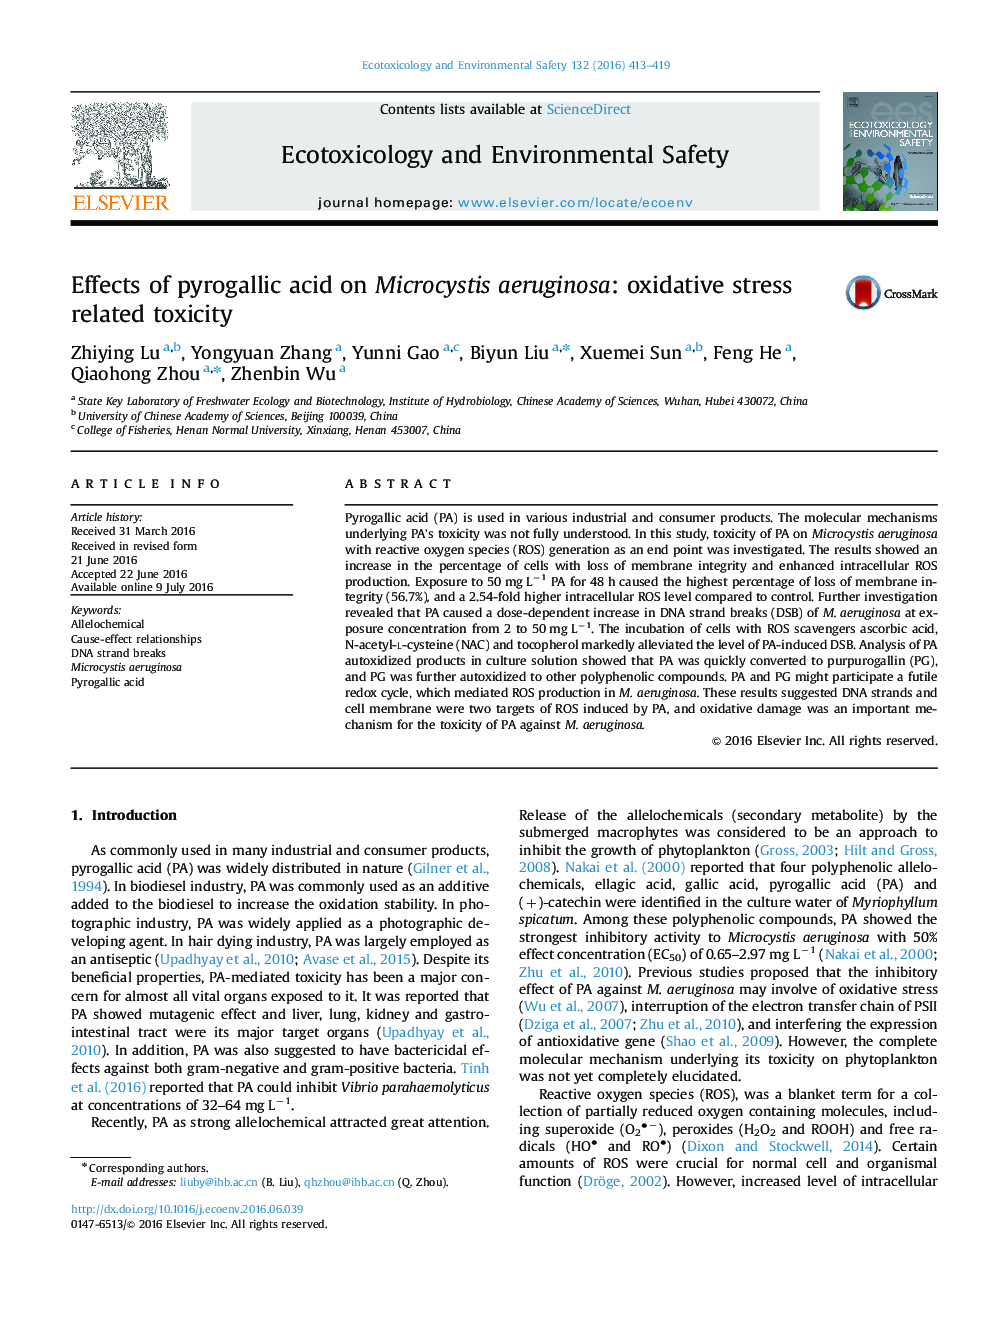 اثر اسید pyrogallic بر Microcystis آئروژینوزا: سمیت مربوط به استرس اکسیداتیو